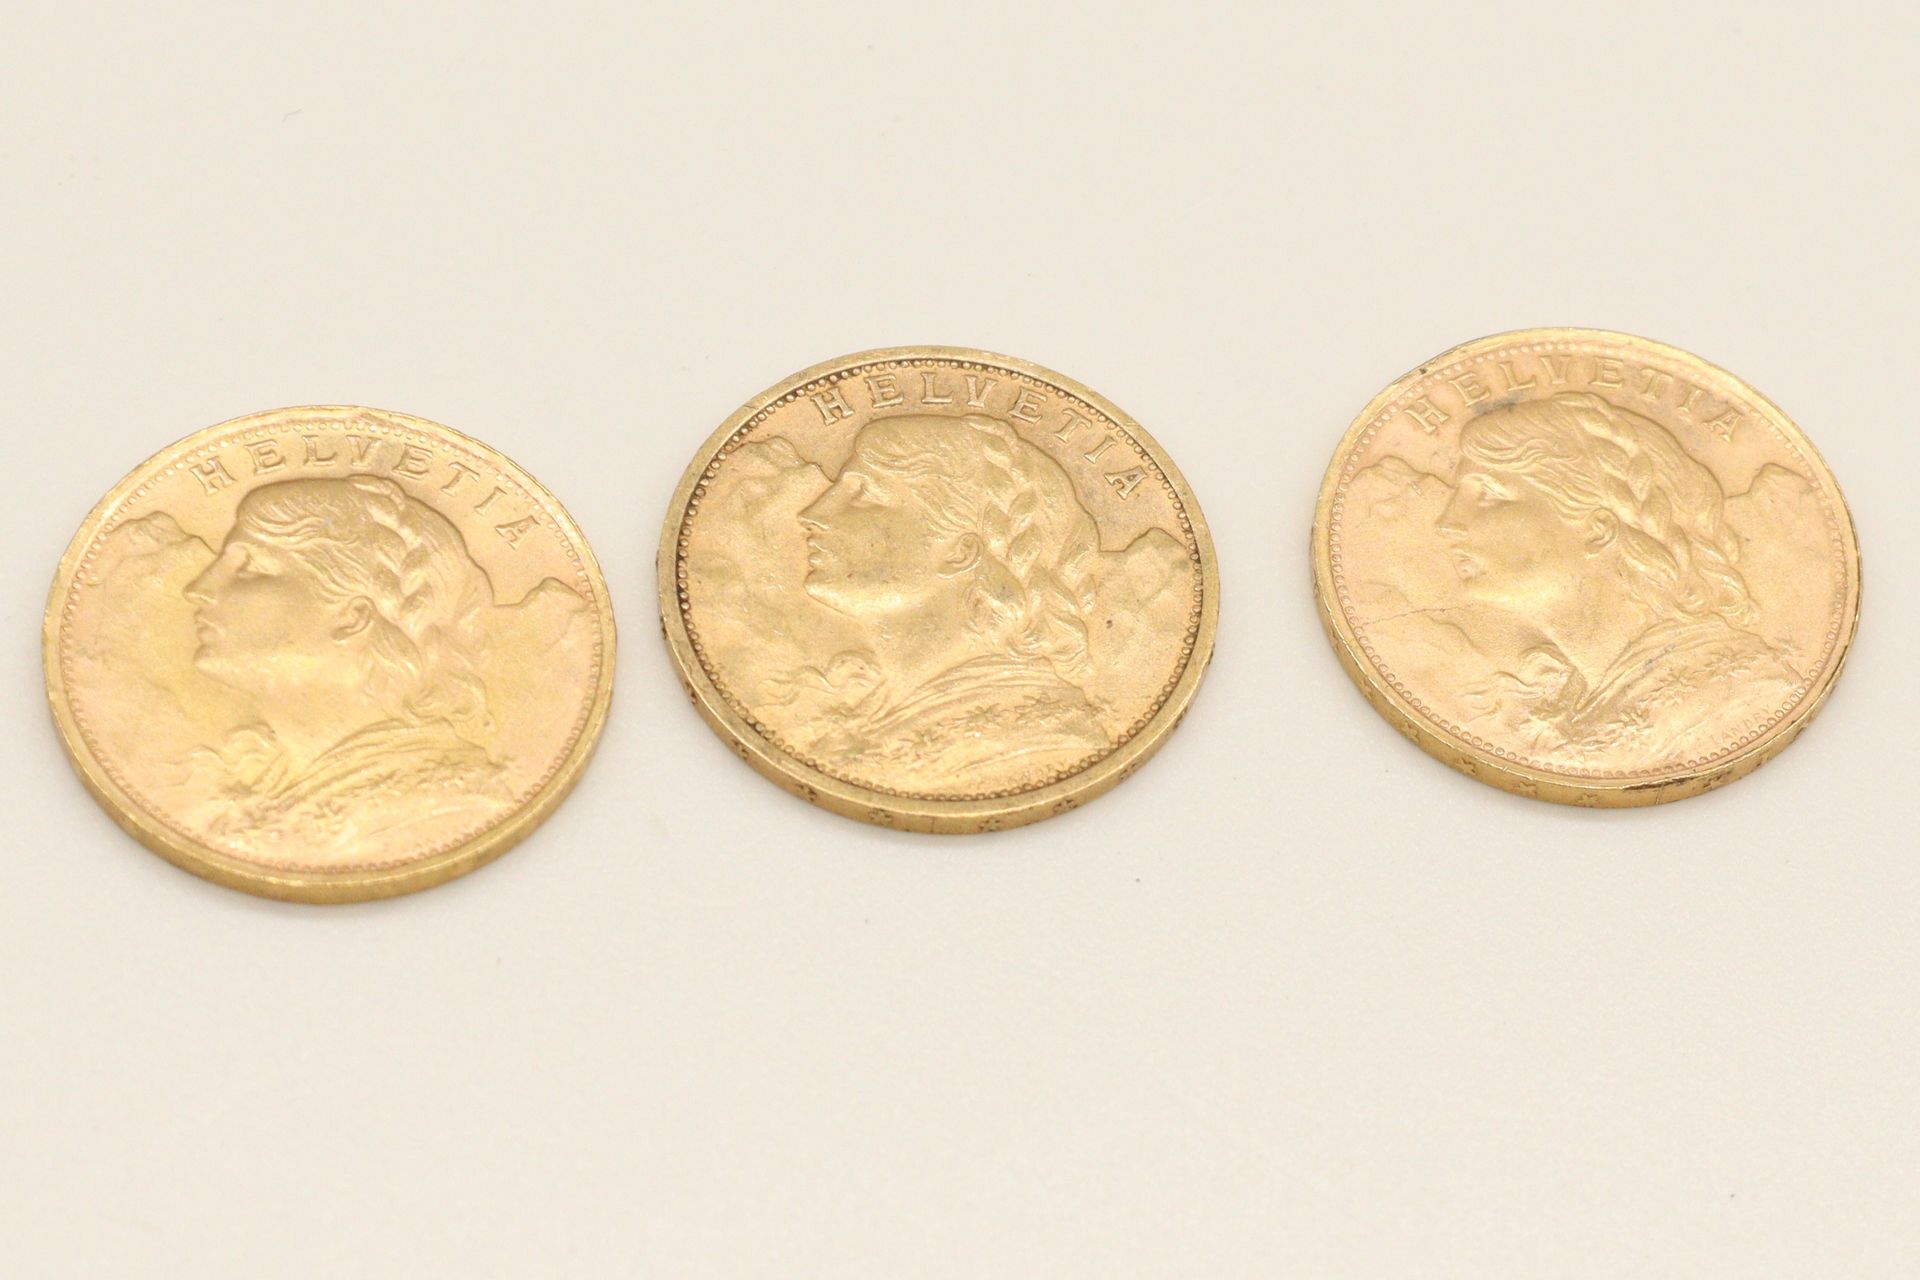 Null 瑞士联邦的三枚20法郎金币拍品，包括:

1899年的20法郎硬币

1935年的20法郎硬币

1947年的20法郎硬币

VG至TTB

重量：1&hellip;